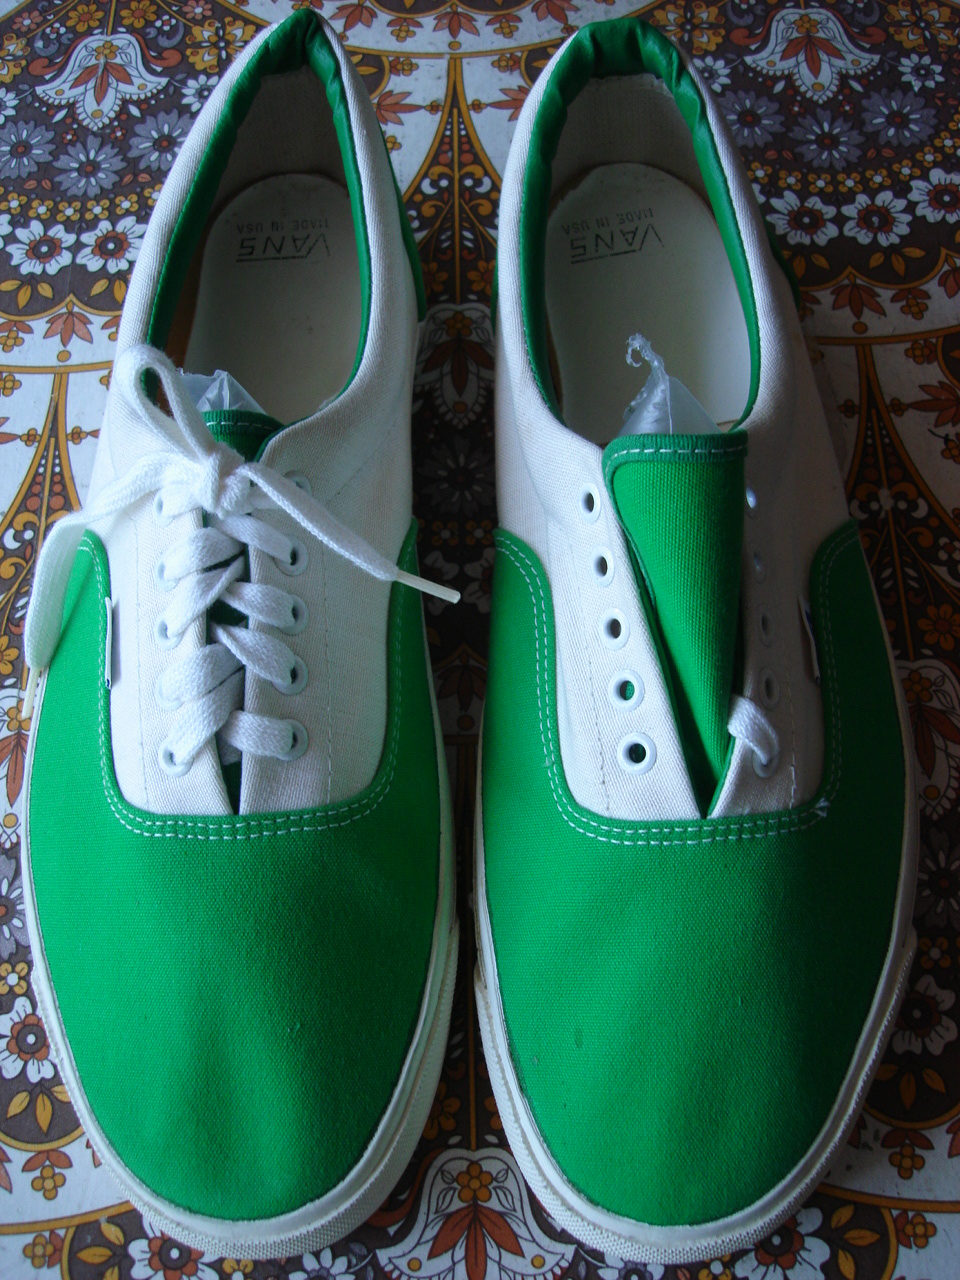 theothersideofthepillow: vintage VANS 2-tone green & white ERA style ...